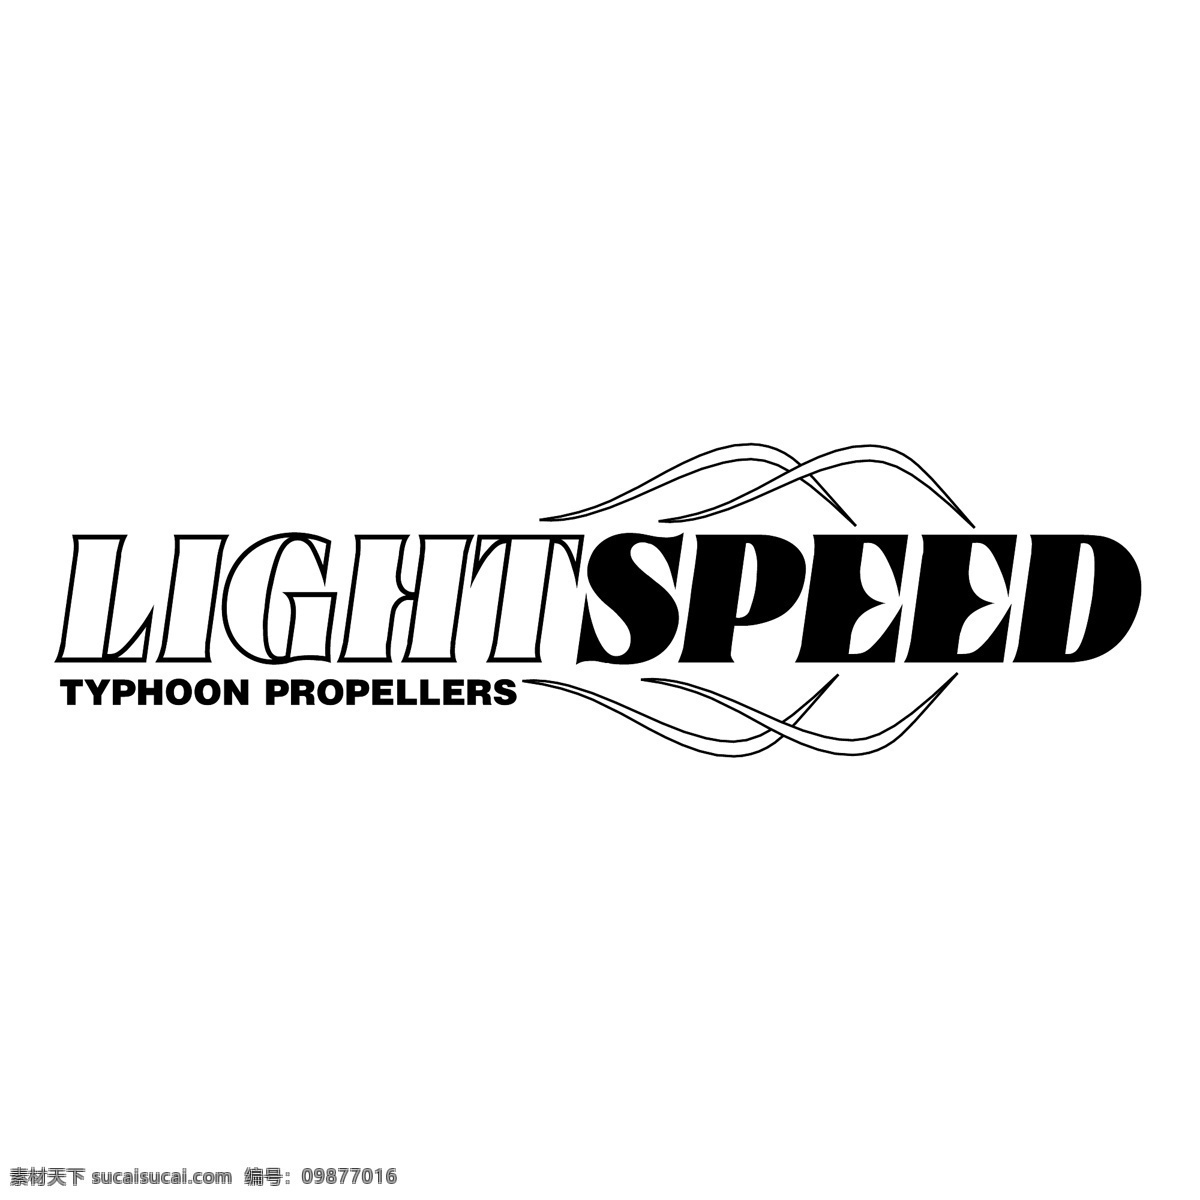 光 速度 自由 之光 标志 灯 psd源文件 logo设计